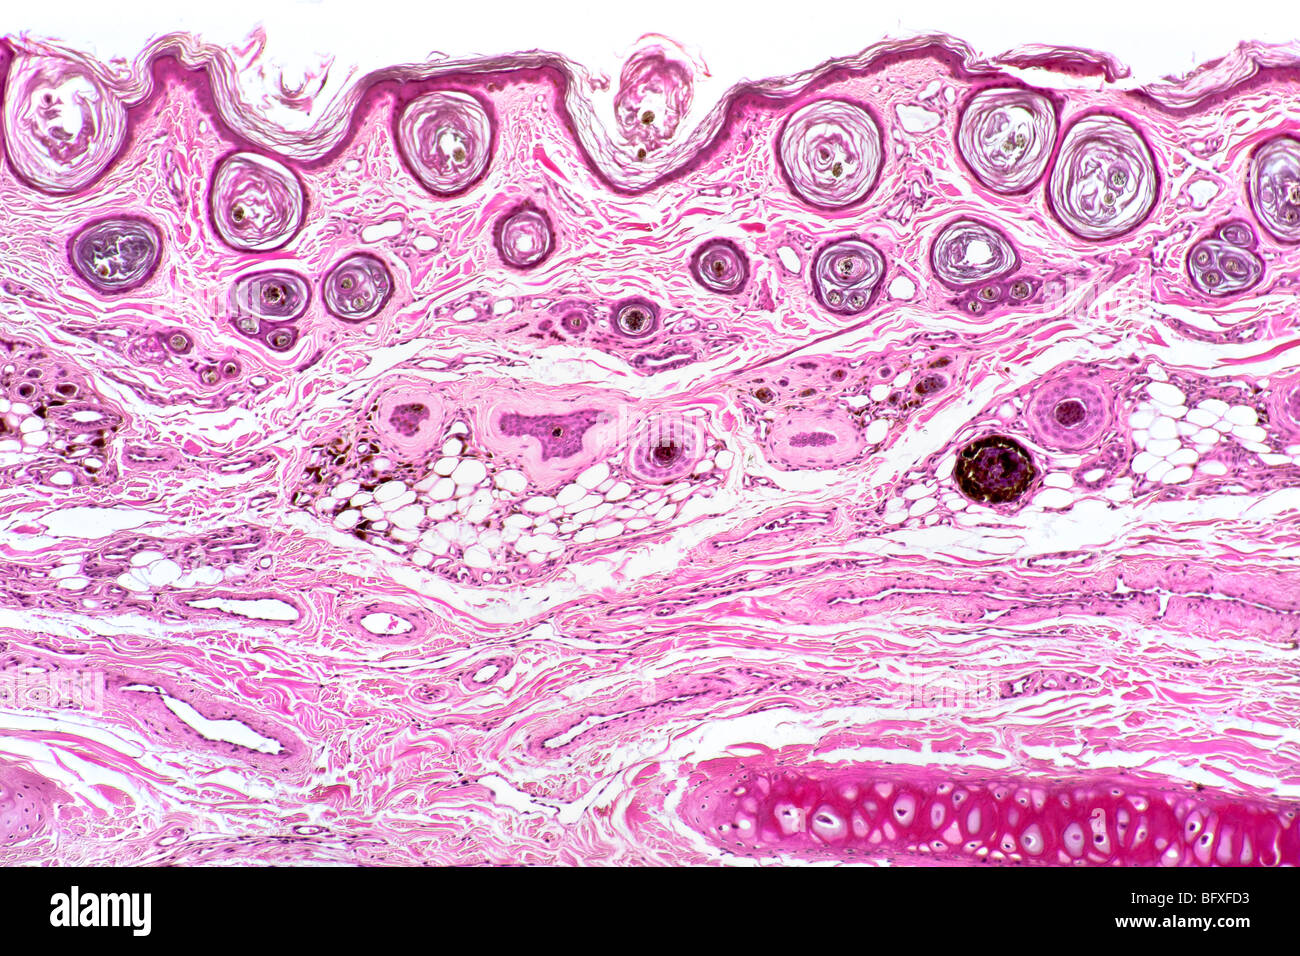 Follicule de cheveux de mammifères détail dans peau extérieure, fond clair photomicrographie Banque D'Images